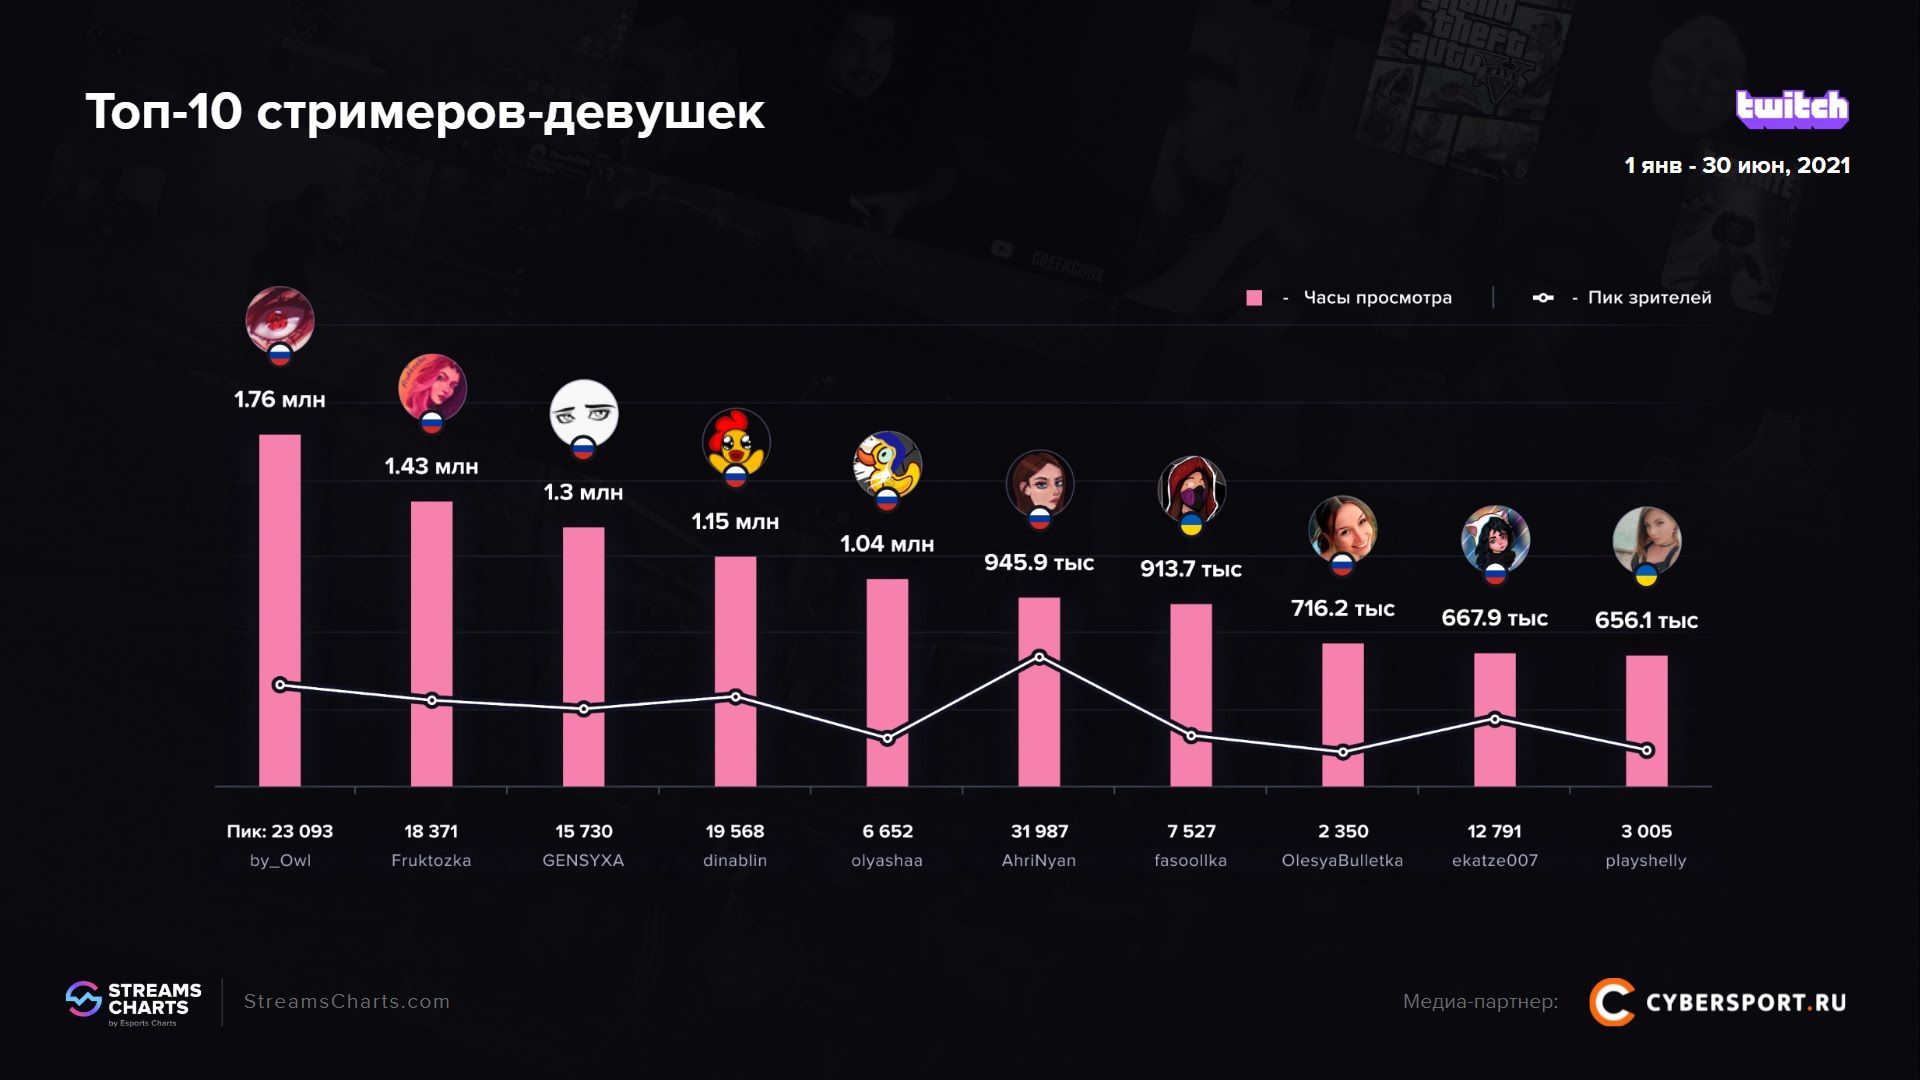 Самые популярные русскоязычные стримерши на Twitch | Источник: исследование Streams Charts и Cybersport.ru